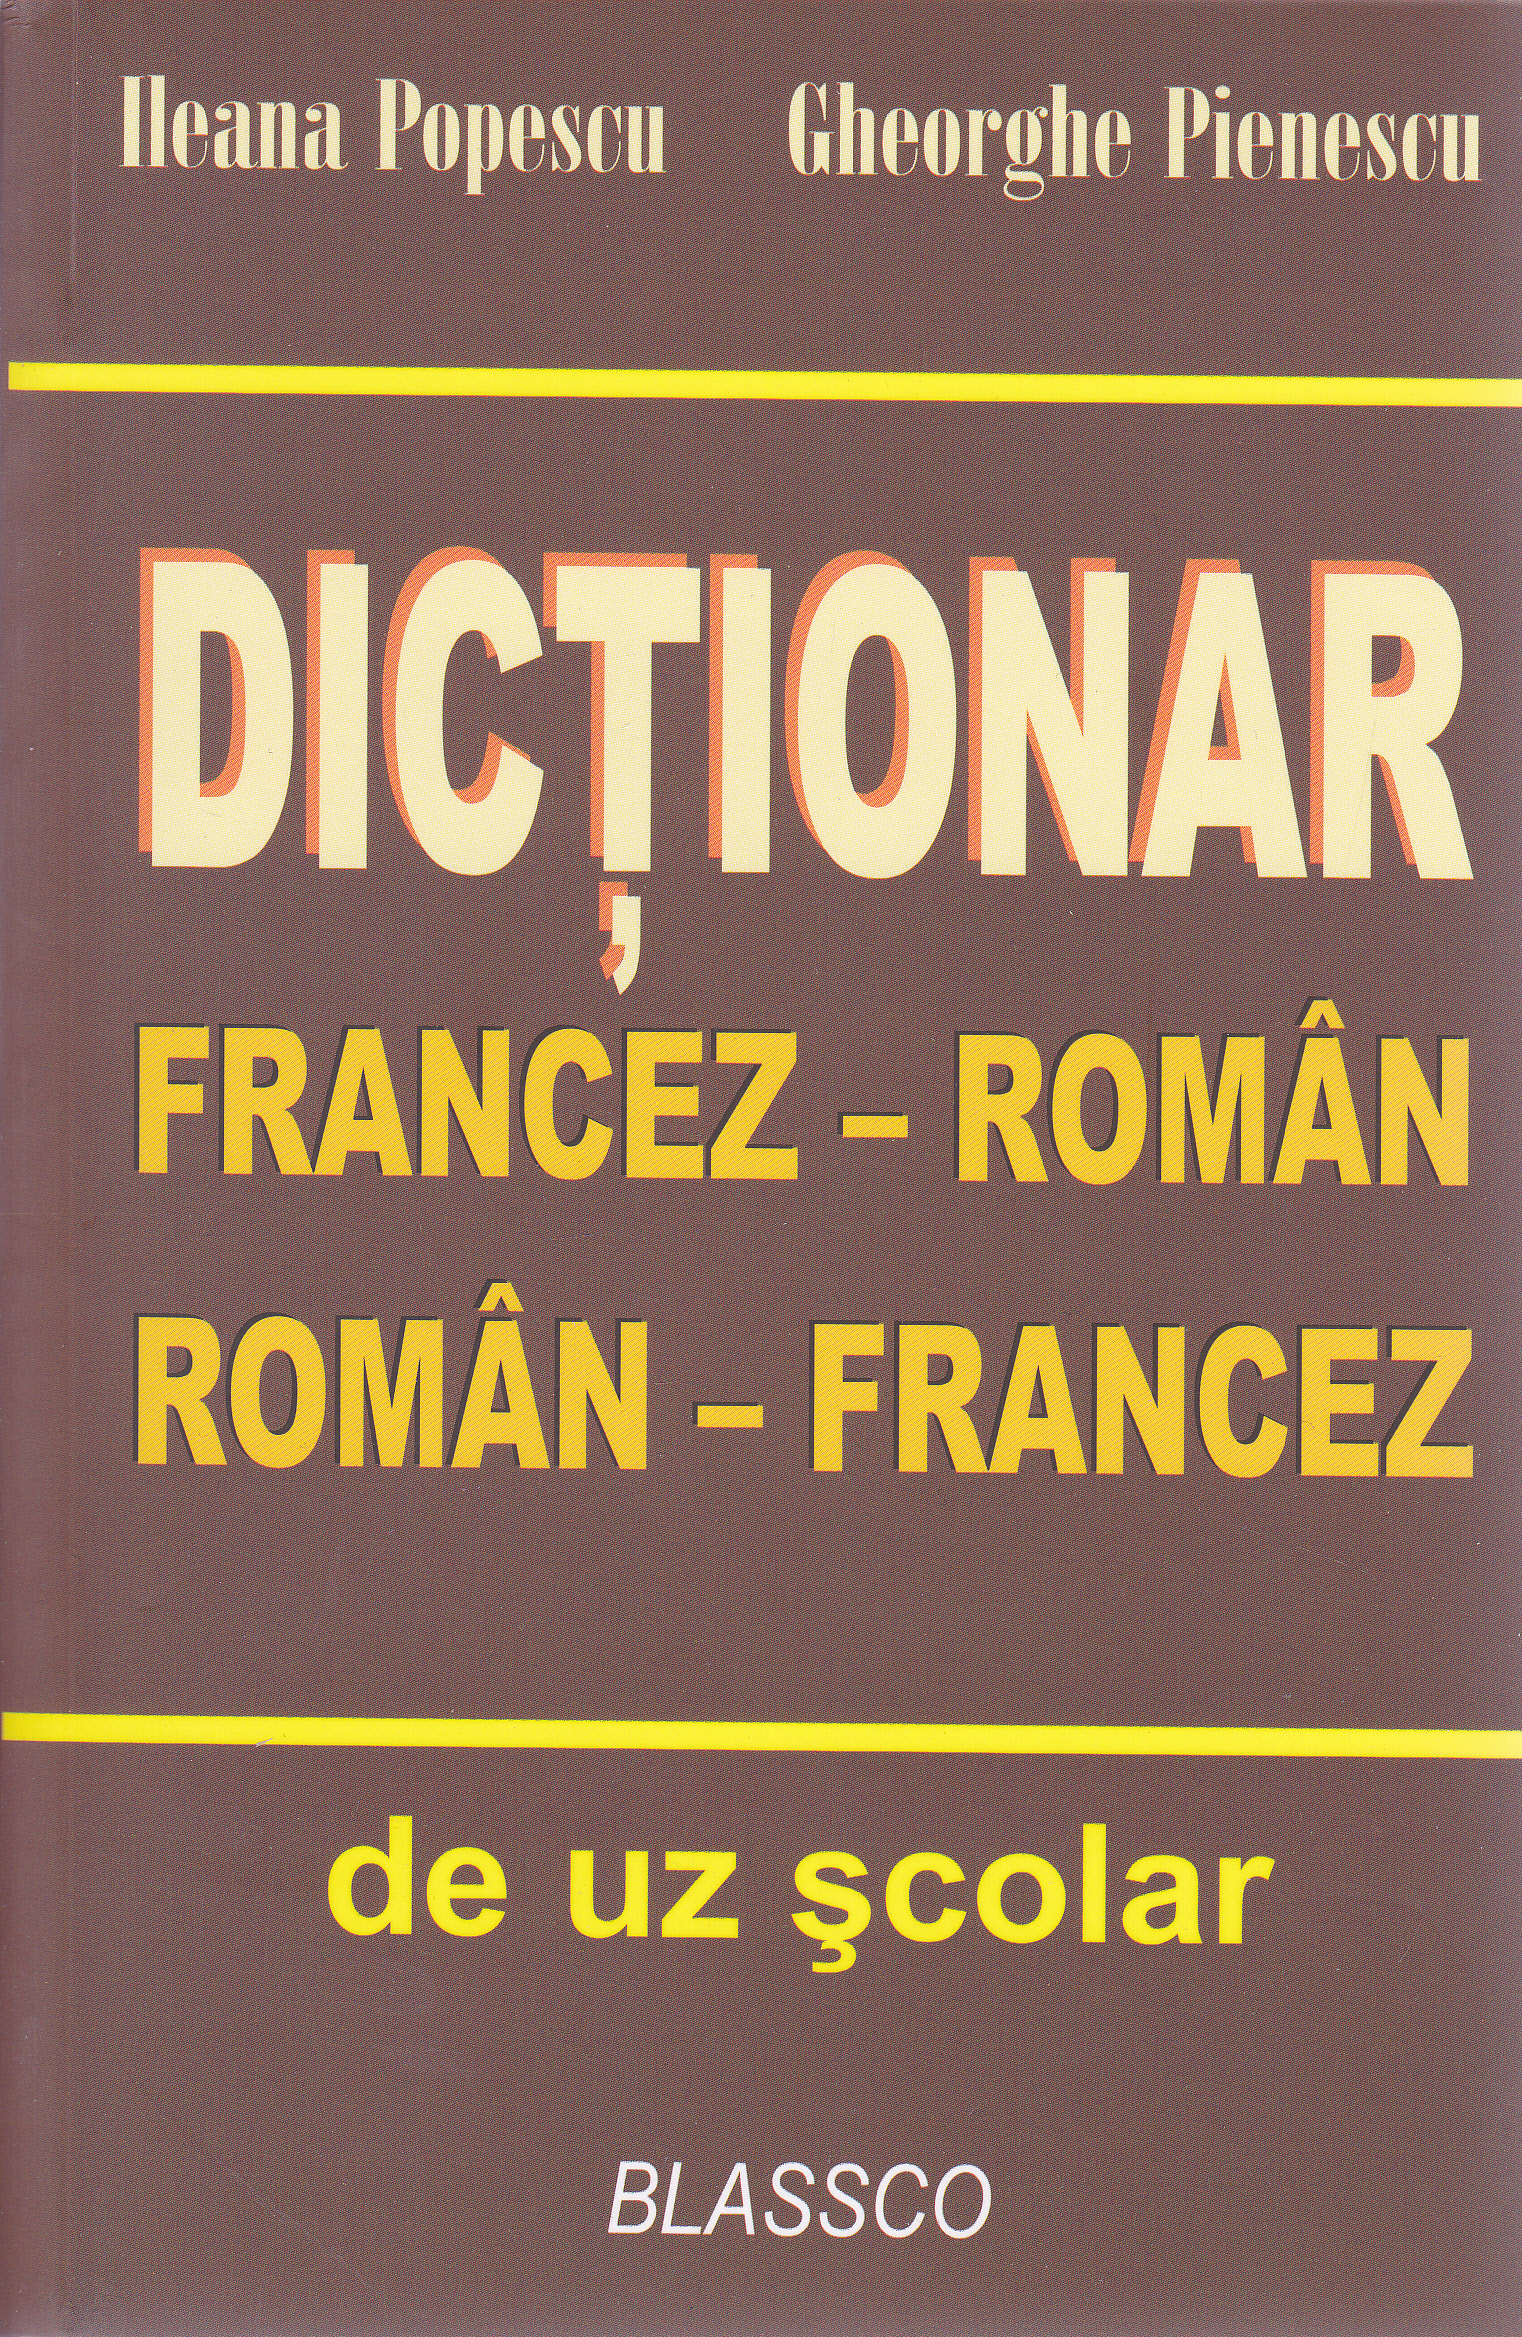 Dictionar francez-roman, roman-francez - Ileana Popescu, Gheorghe Pienescu